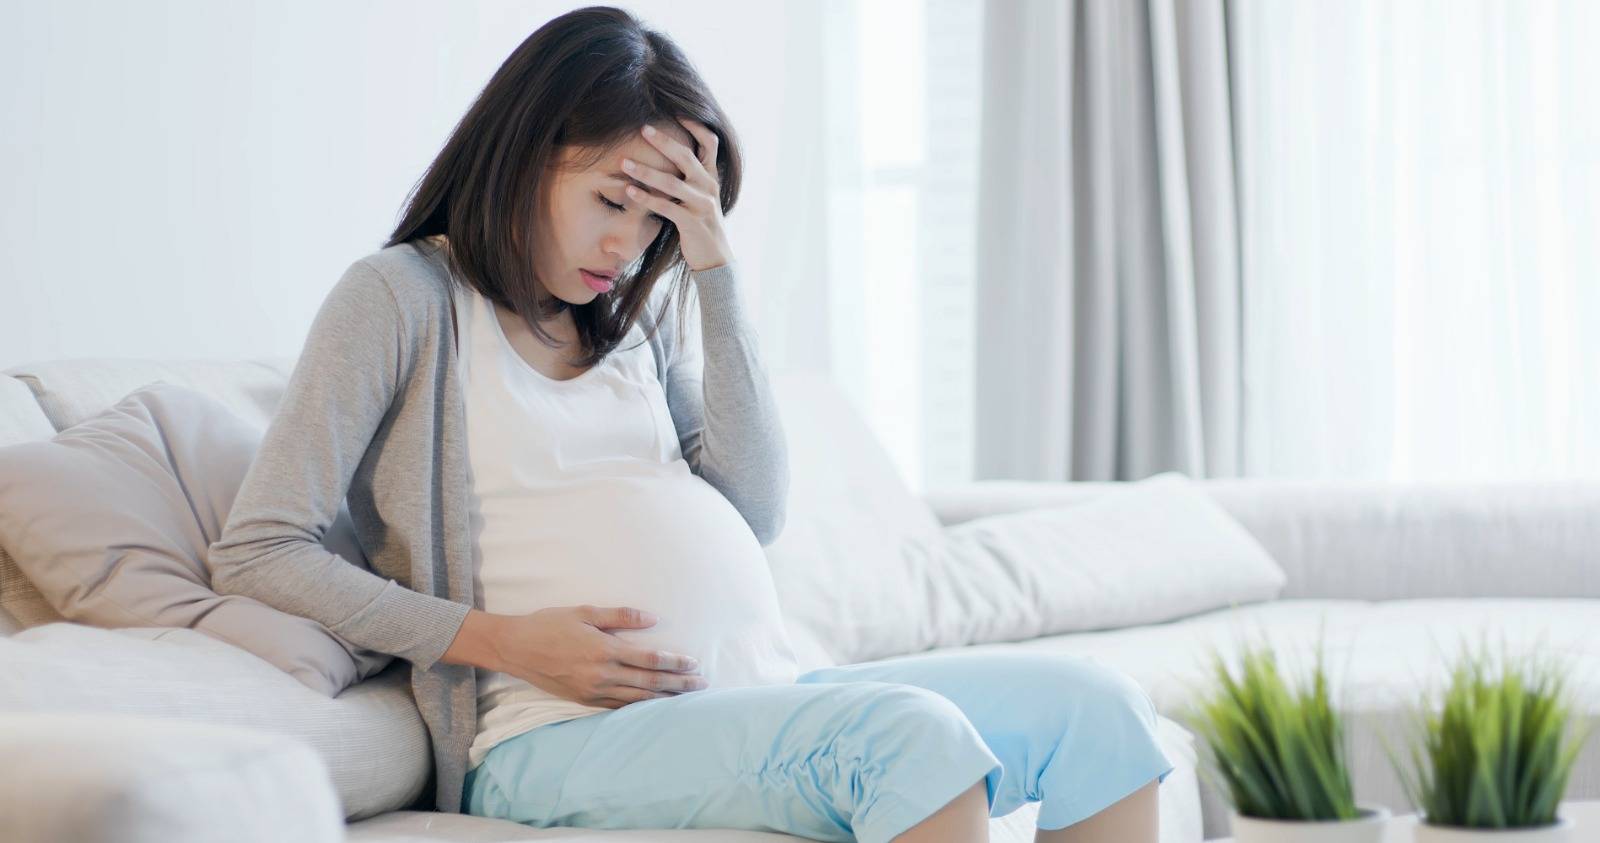 孕婦水腫病發高危 妊娠毒血症惡化急速